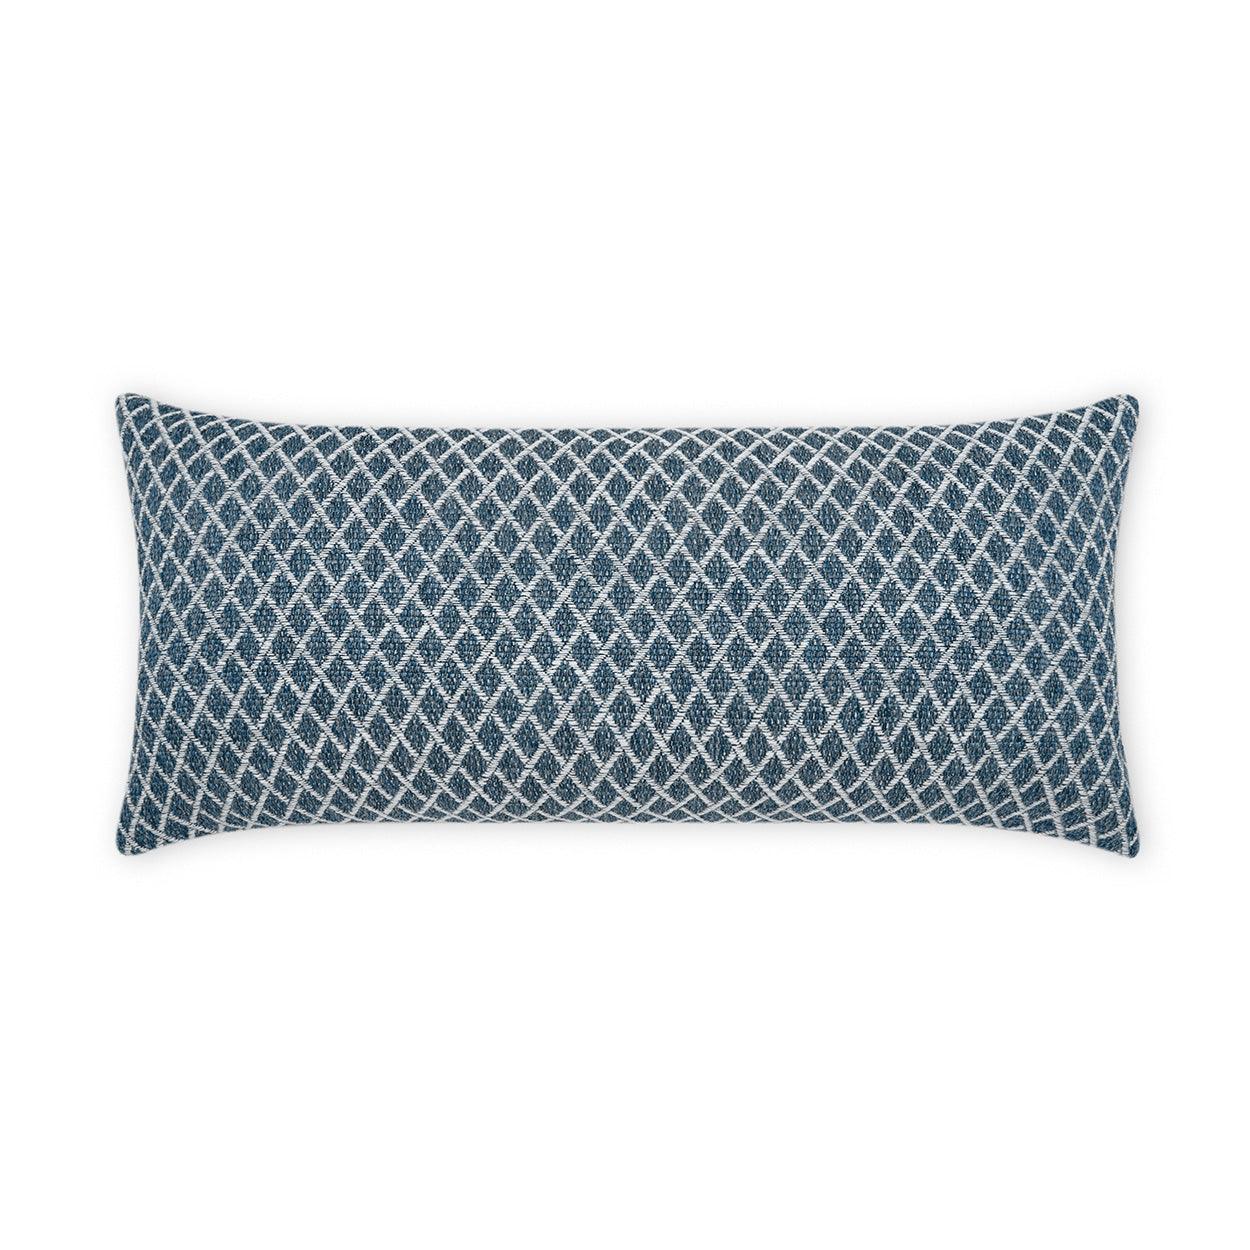 LOOMLAN Outdoor - Outdoor Ambree Lumbar Pillow - Indigo - Outdoor Pillows